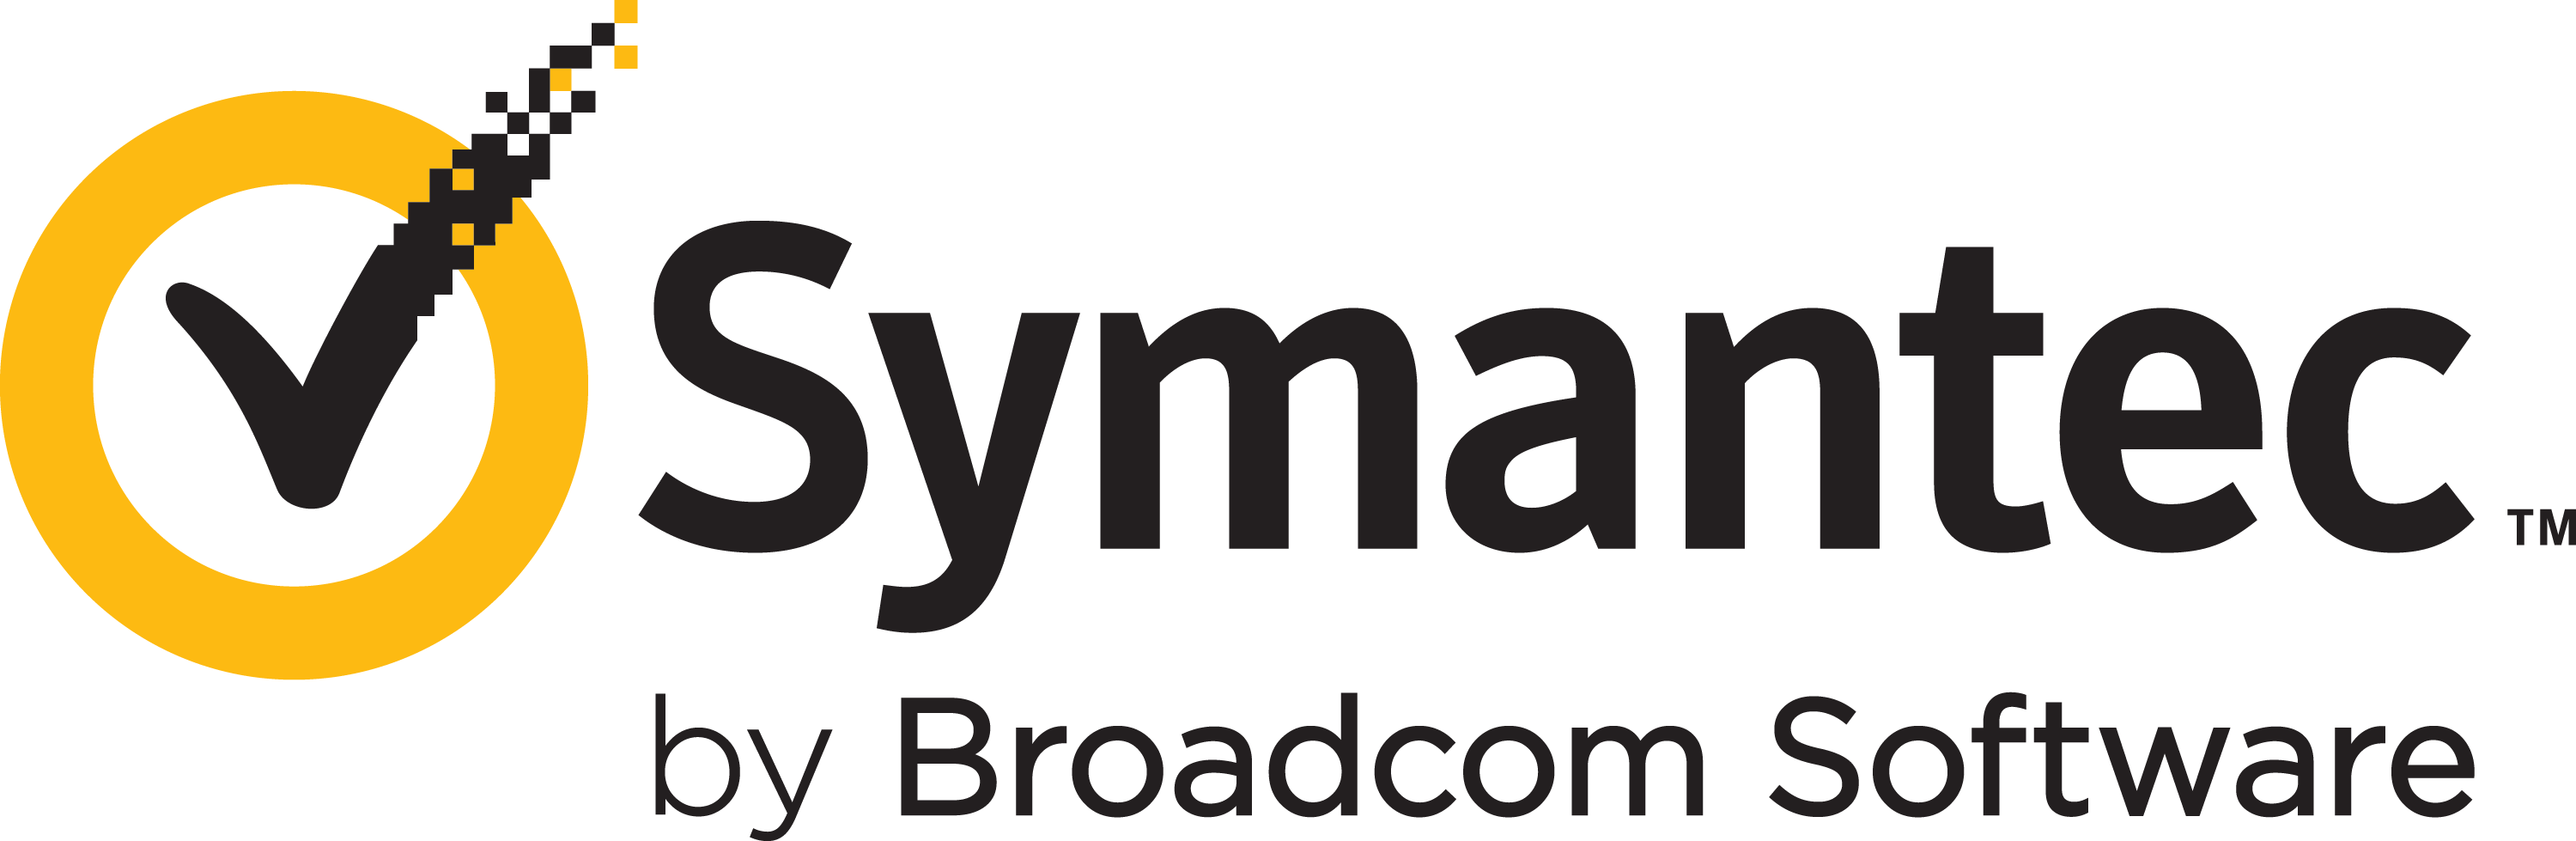 Symantec by Broadcom logo